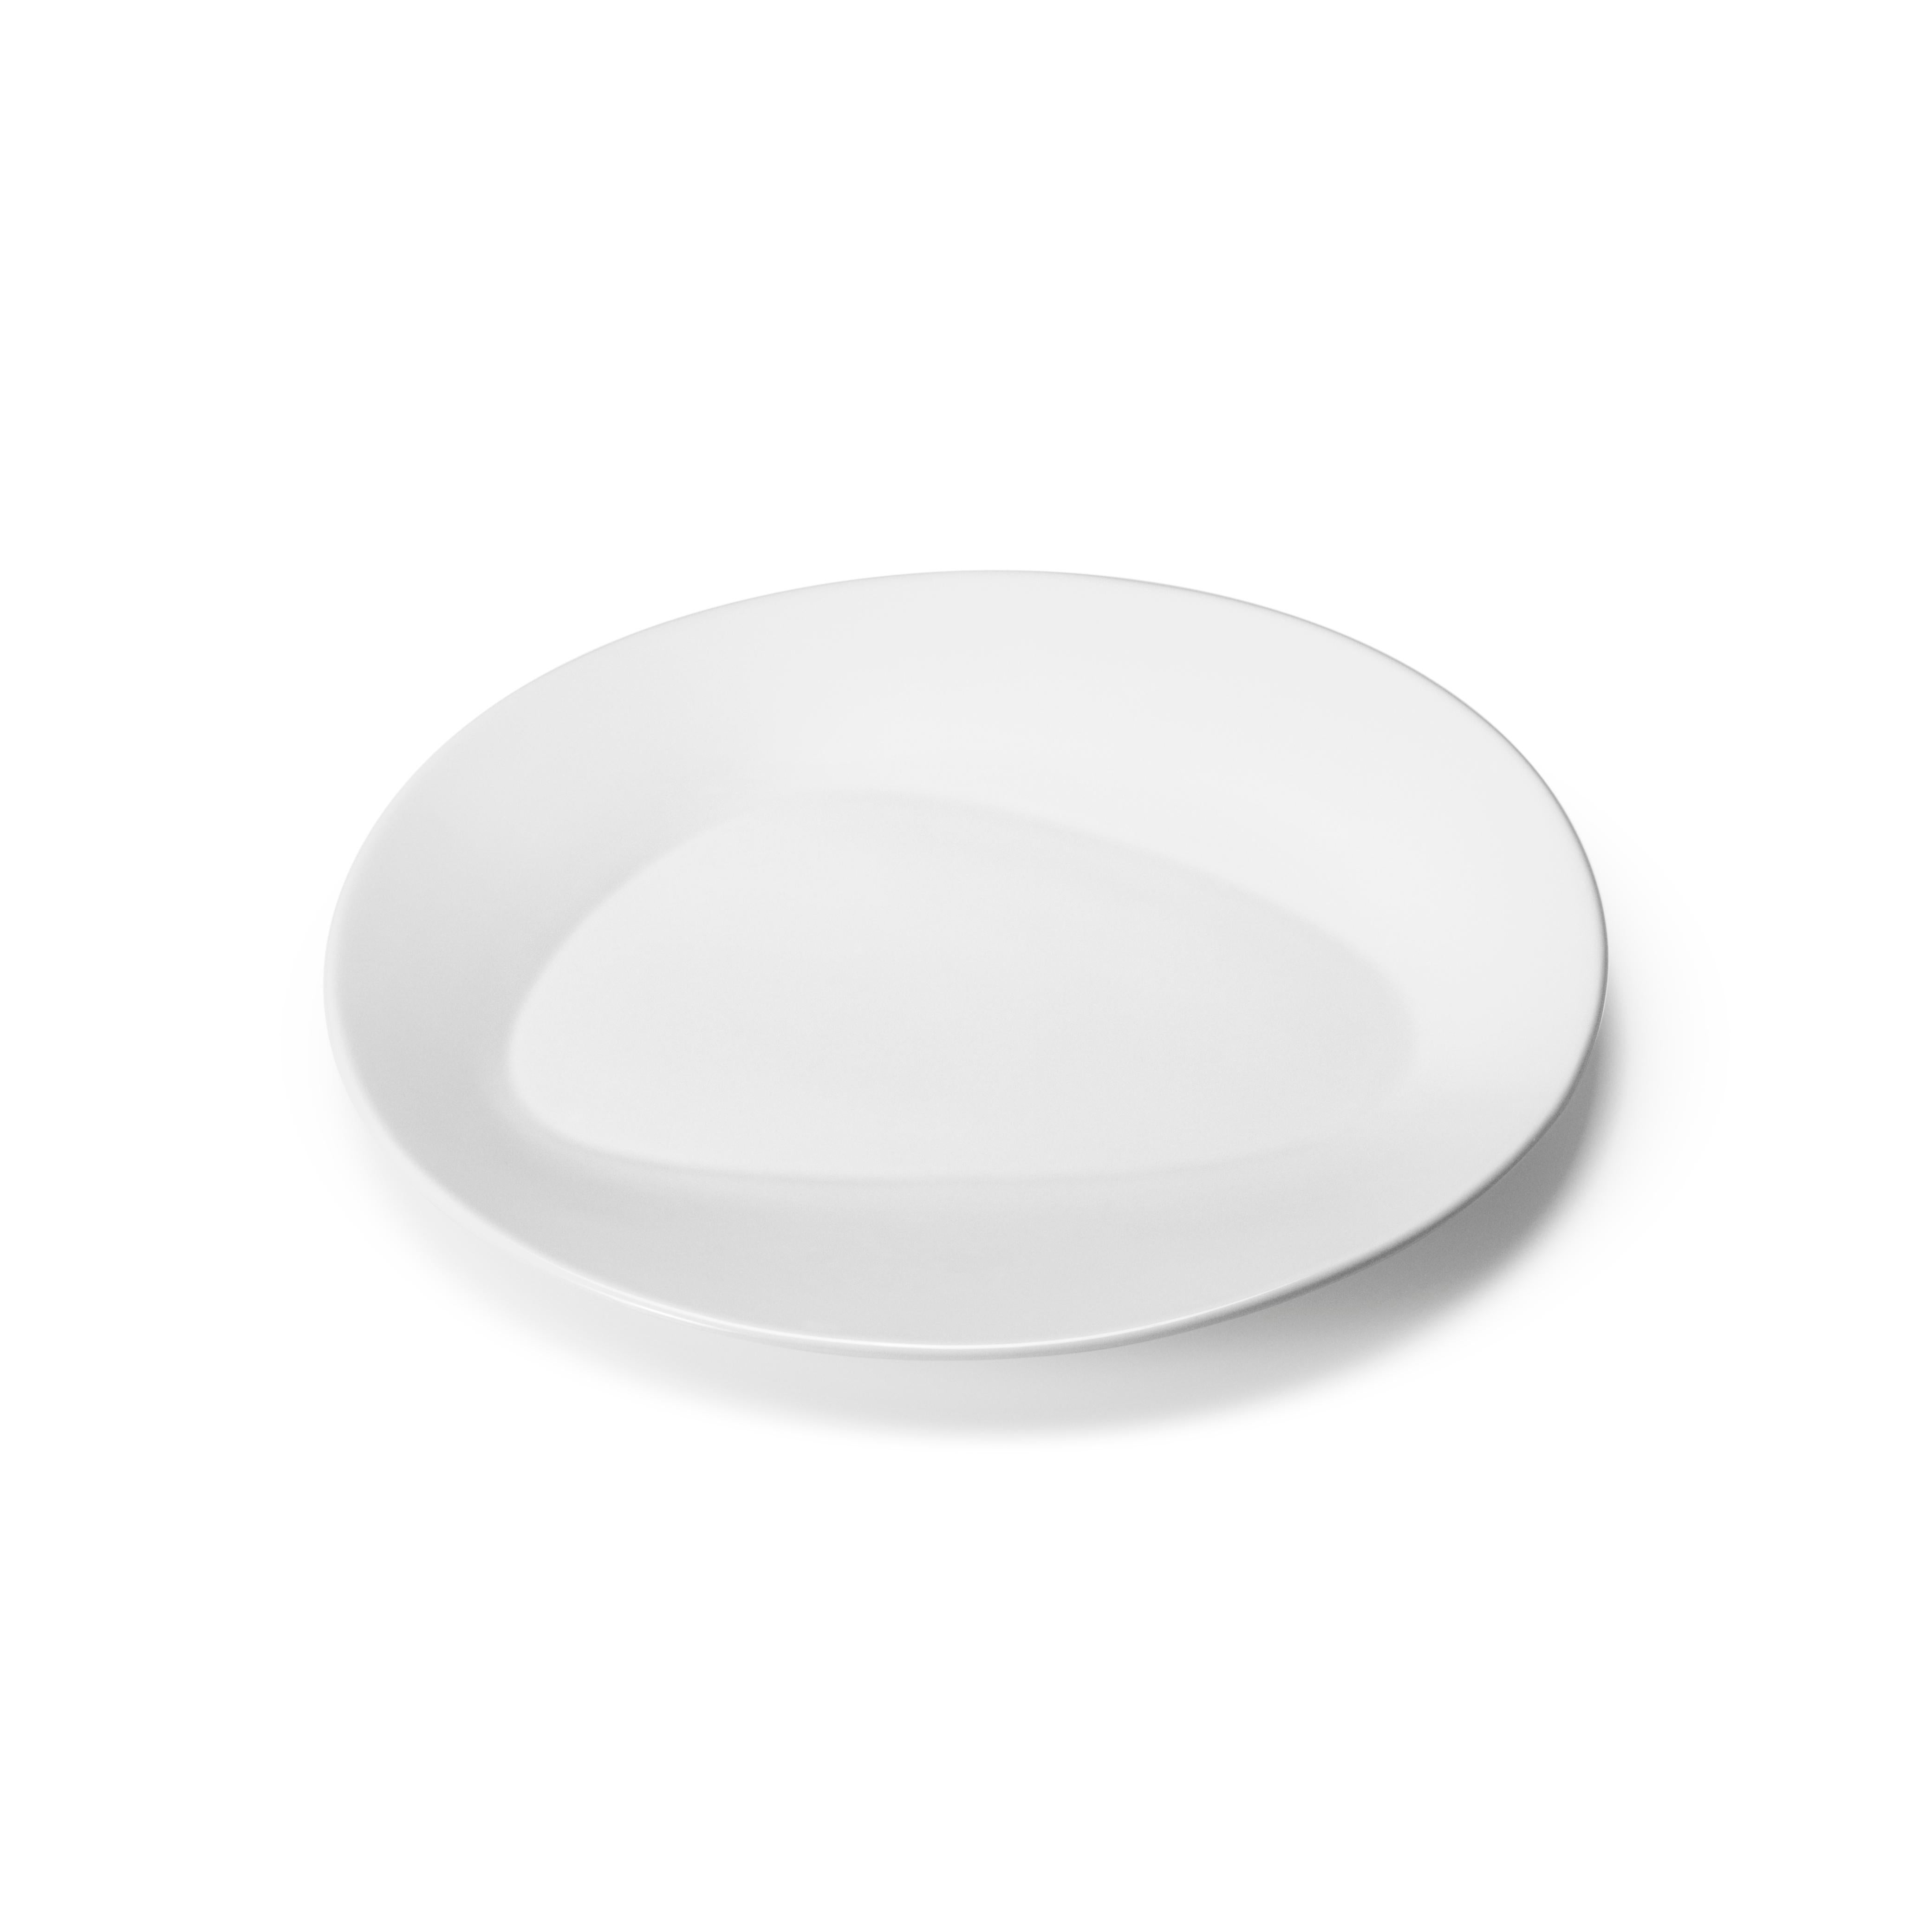 Ce qui semble être à première vue une simple assiette en porcelaine blanche révèle en fait un détail inattendu lorsqu'on l'examine de plus près : sa base a la forme d'une asymétrie qui fait écho à d'autres pièces de la collection Sky de Georg